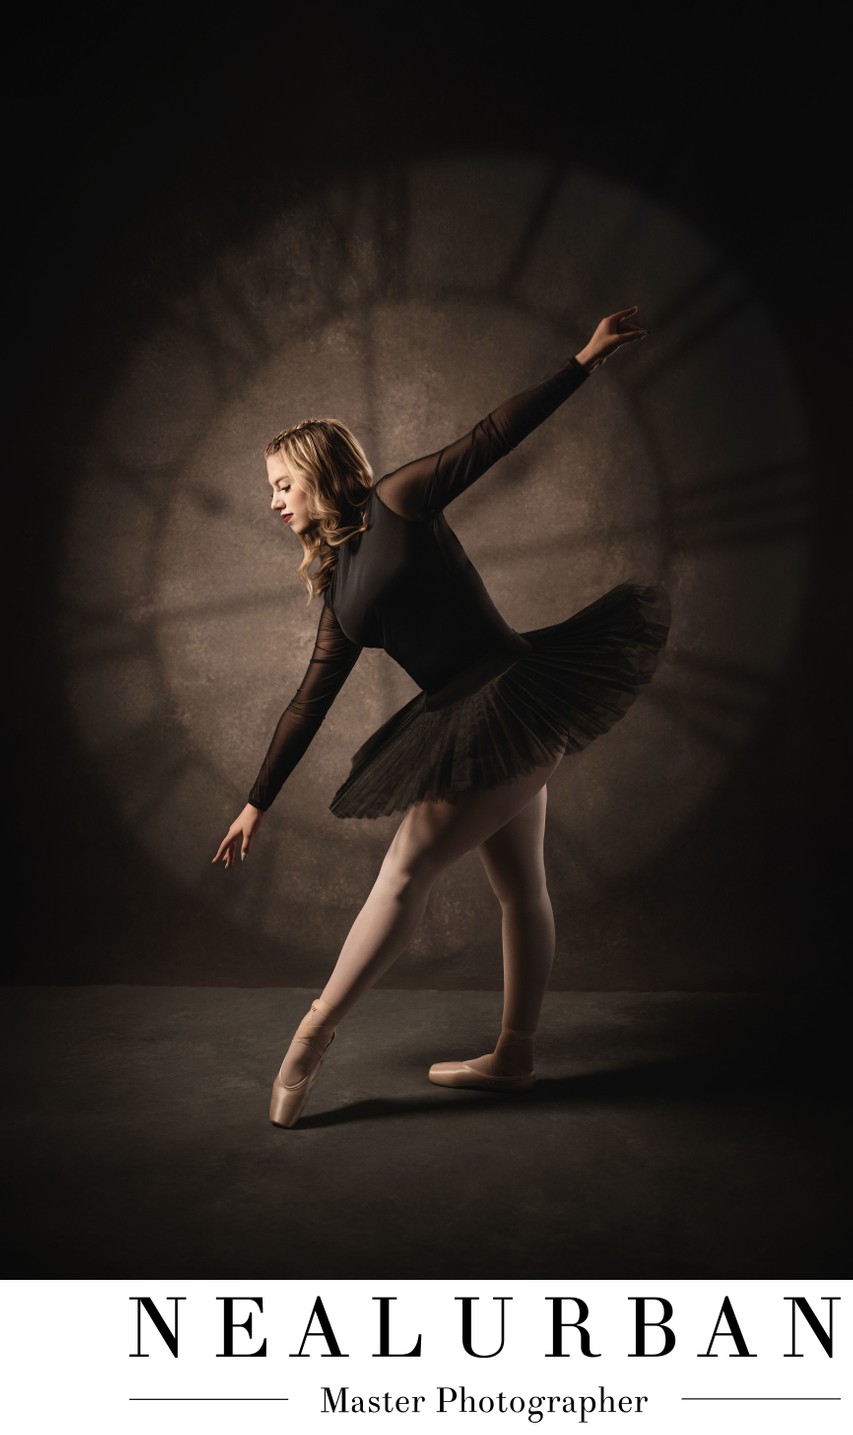 Senior Ballerina